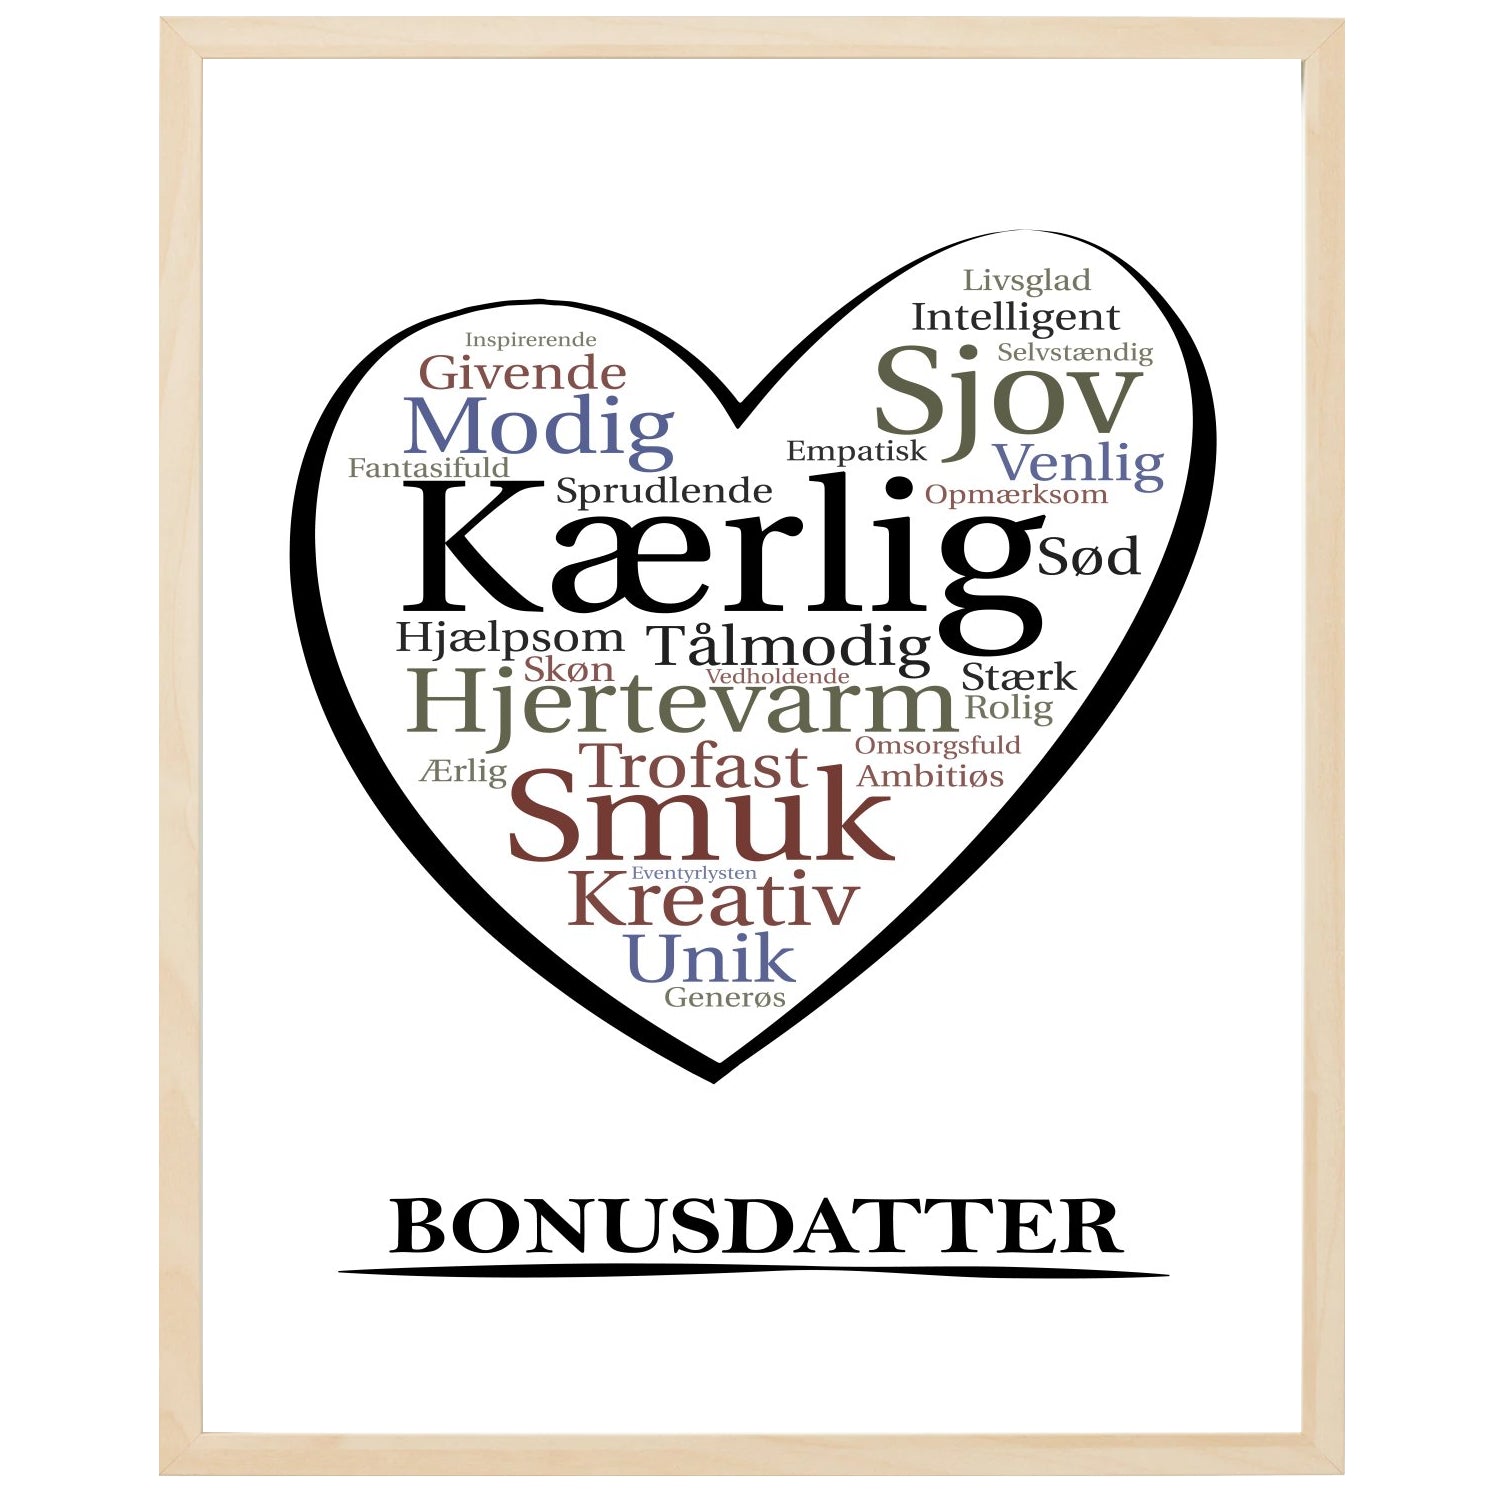 En plakat med overskriften Bonusdatter, et hjerte og indeni hjertet mange positive ord som beskriver en Bonusdatter